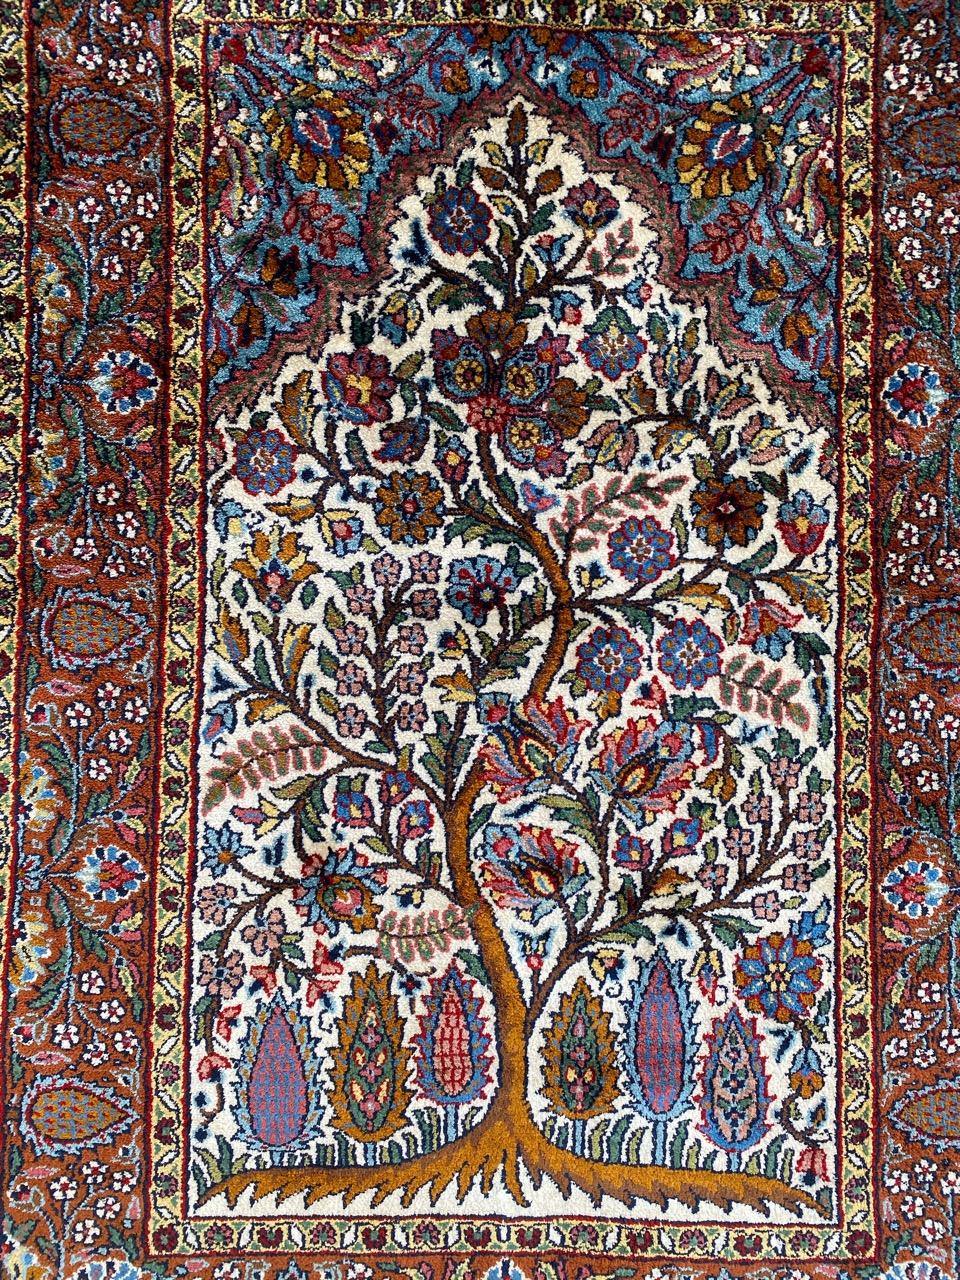 Sehr schöner kleiner Teppich aus dem späten 20. Jahrhundert mit einem schönen Muster des Lebensbaums, mit schönen Blumen und schönen Farben, ganz und gar und sehr fein handgeknüpft mit Seidensamt.